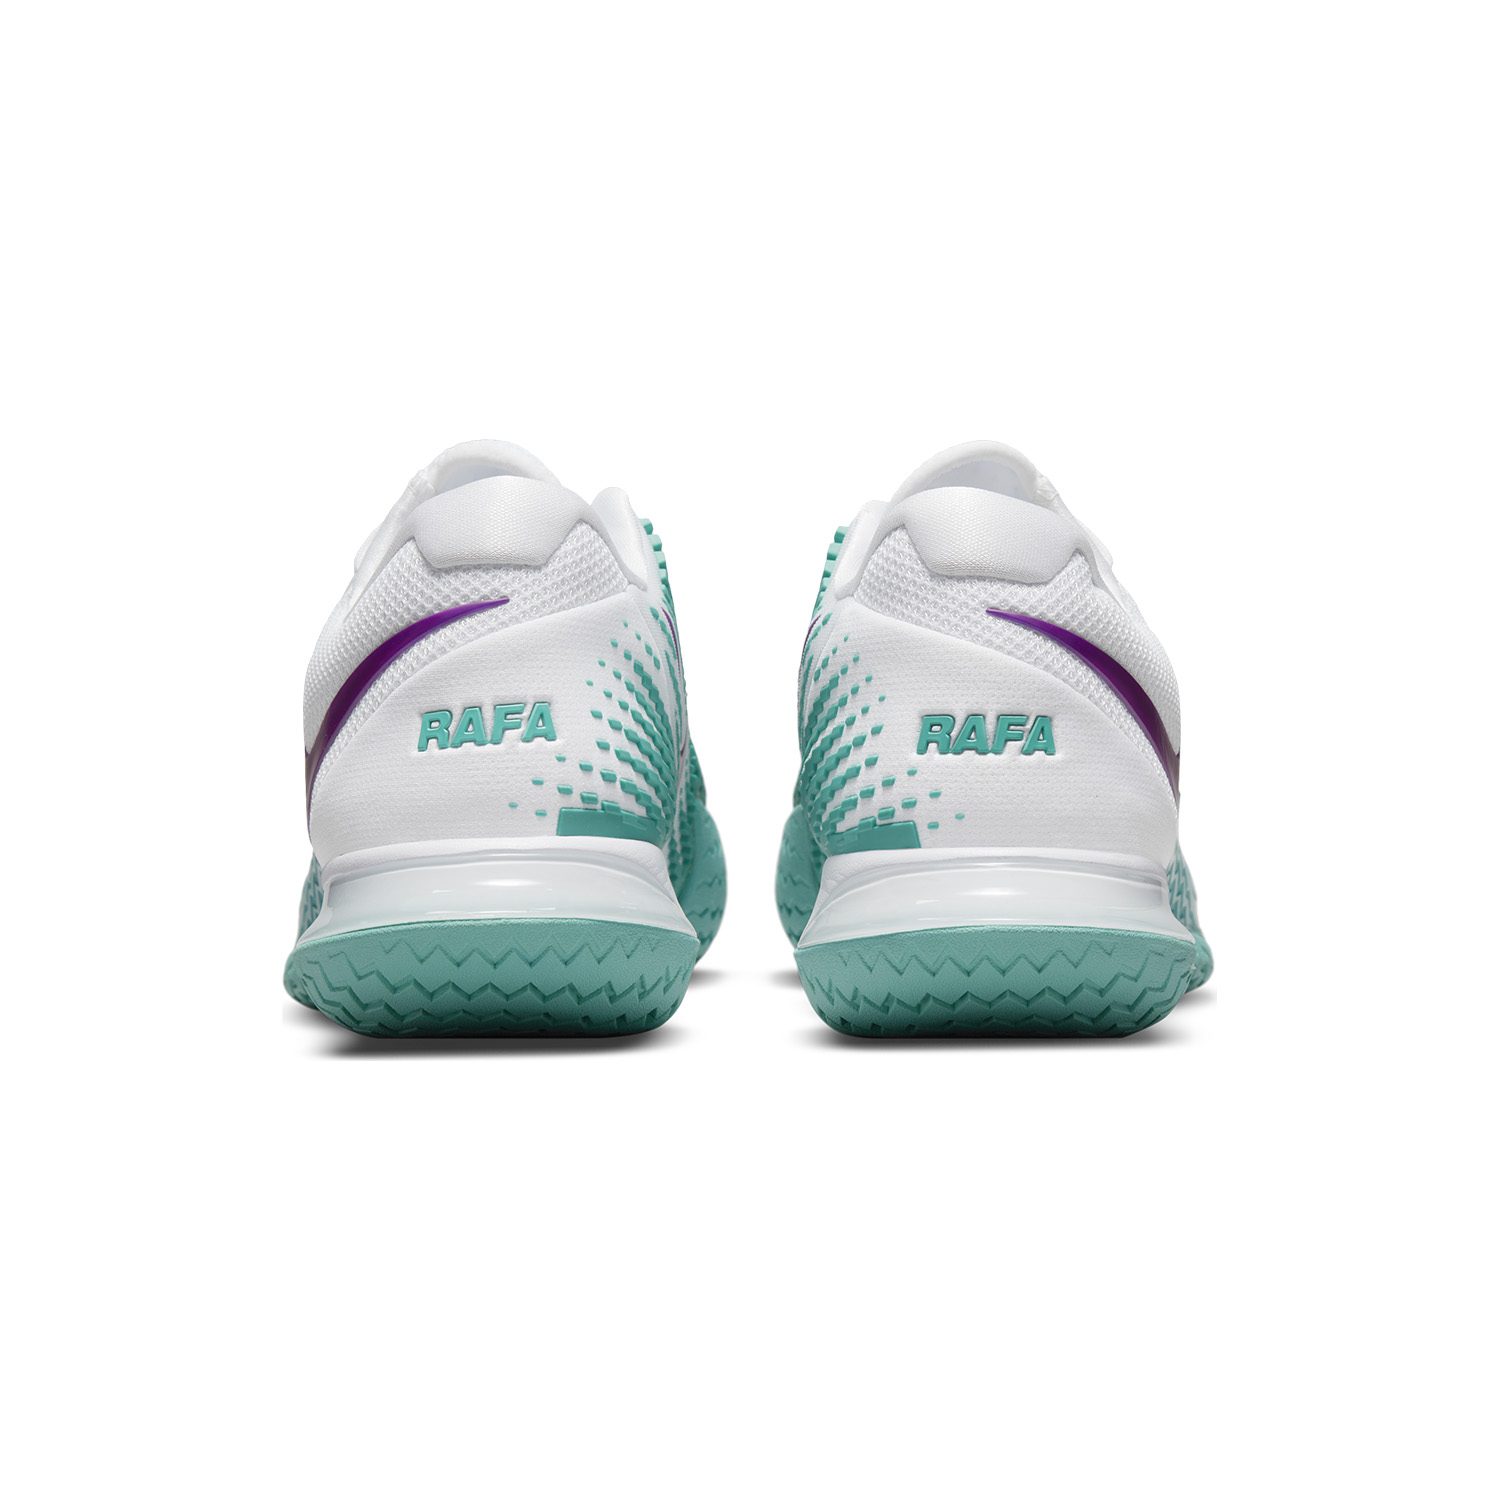 Nike Air Zoom Vapor Cage 4 Rafa HC - White/Red Plum/Washed Teal